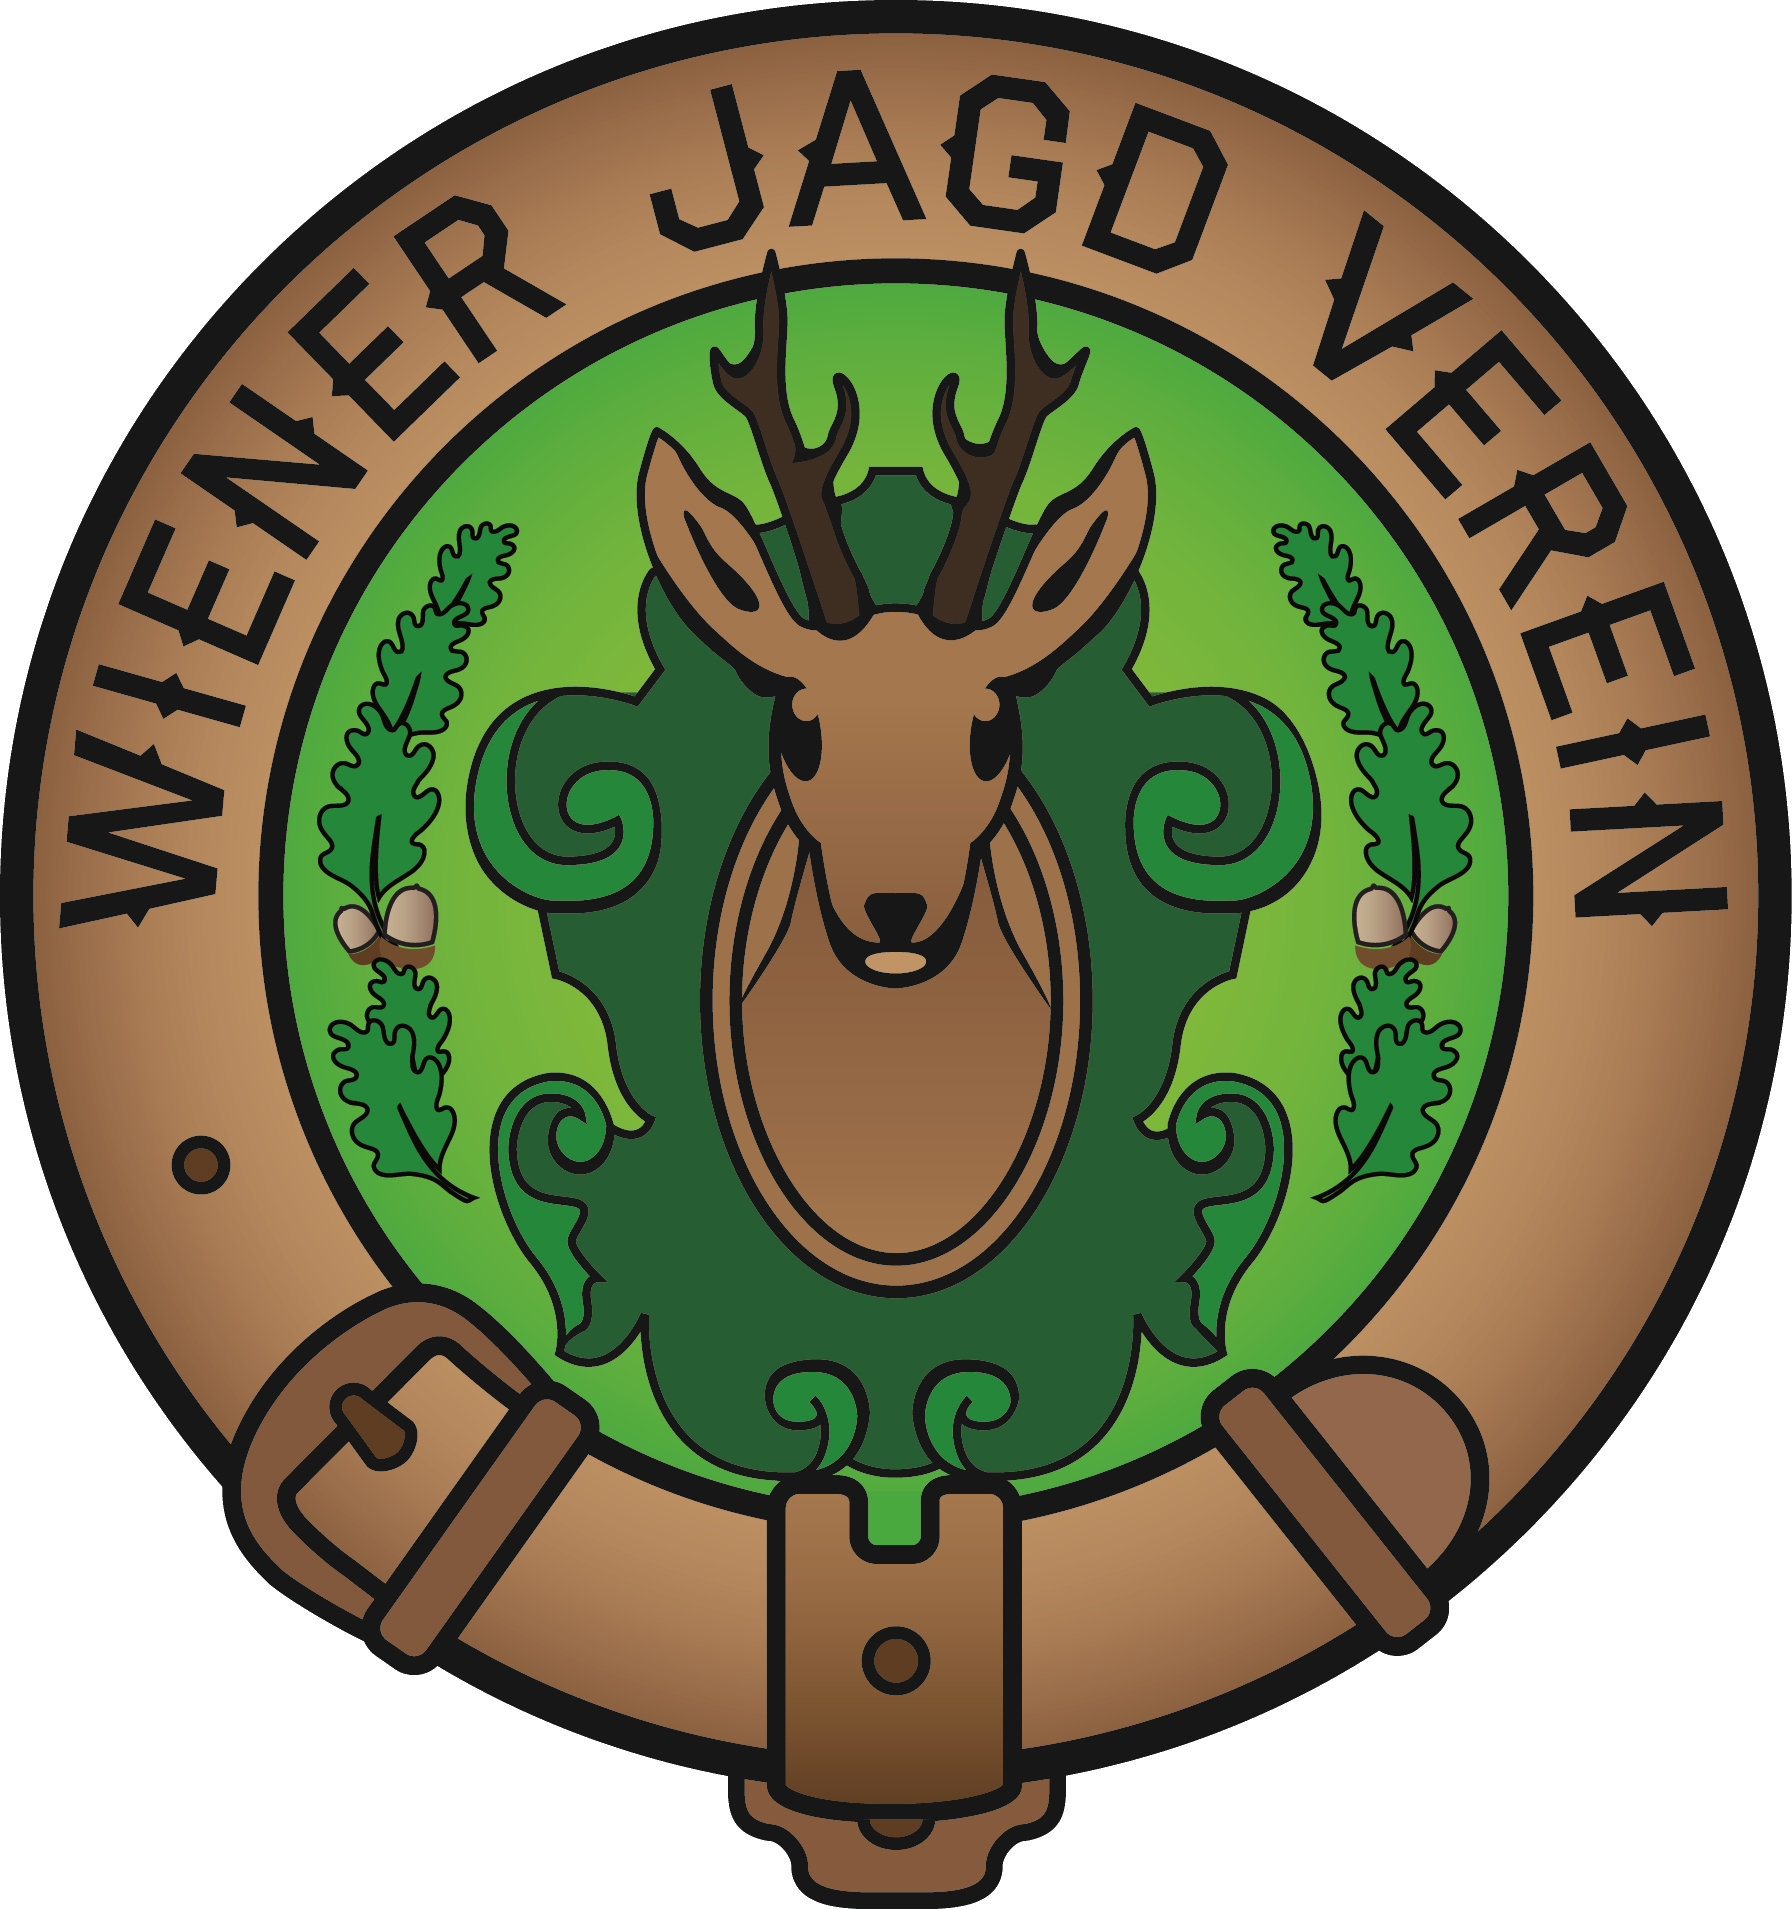 Wiener Jagdverein